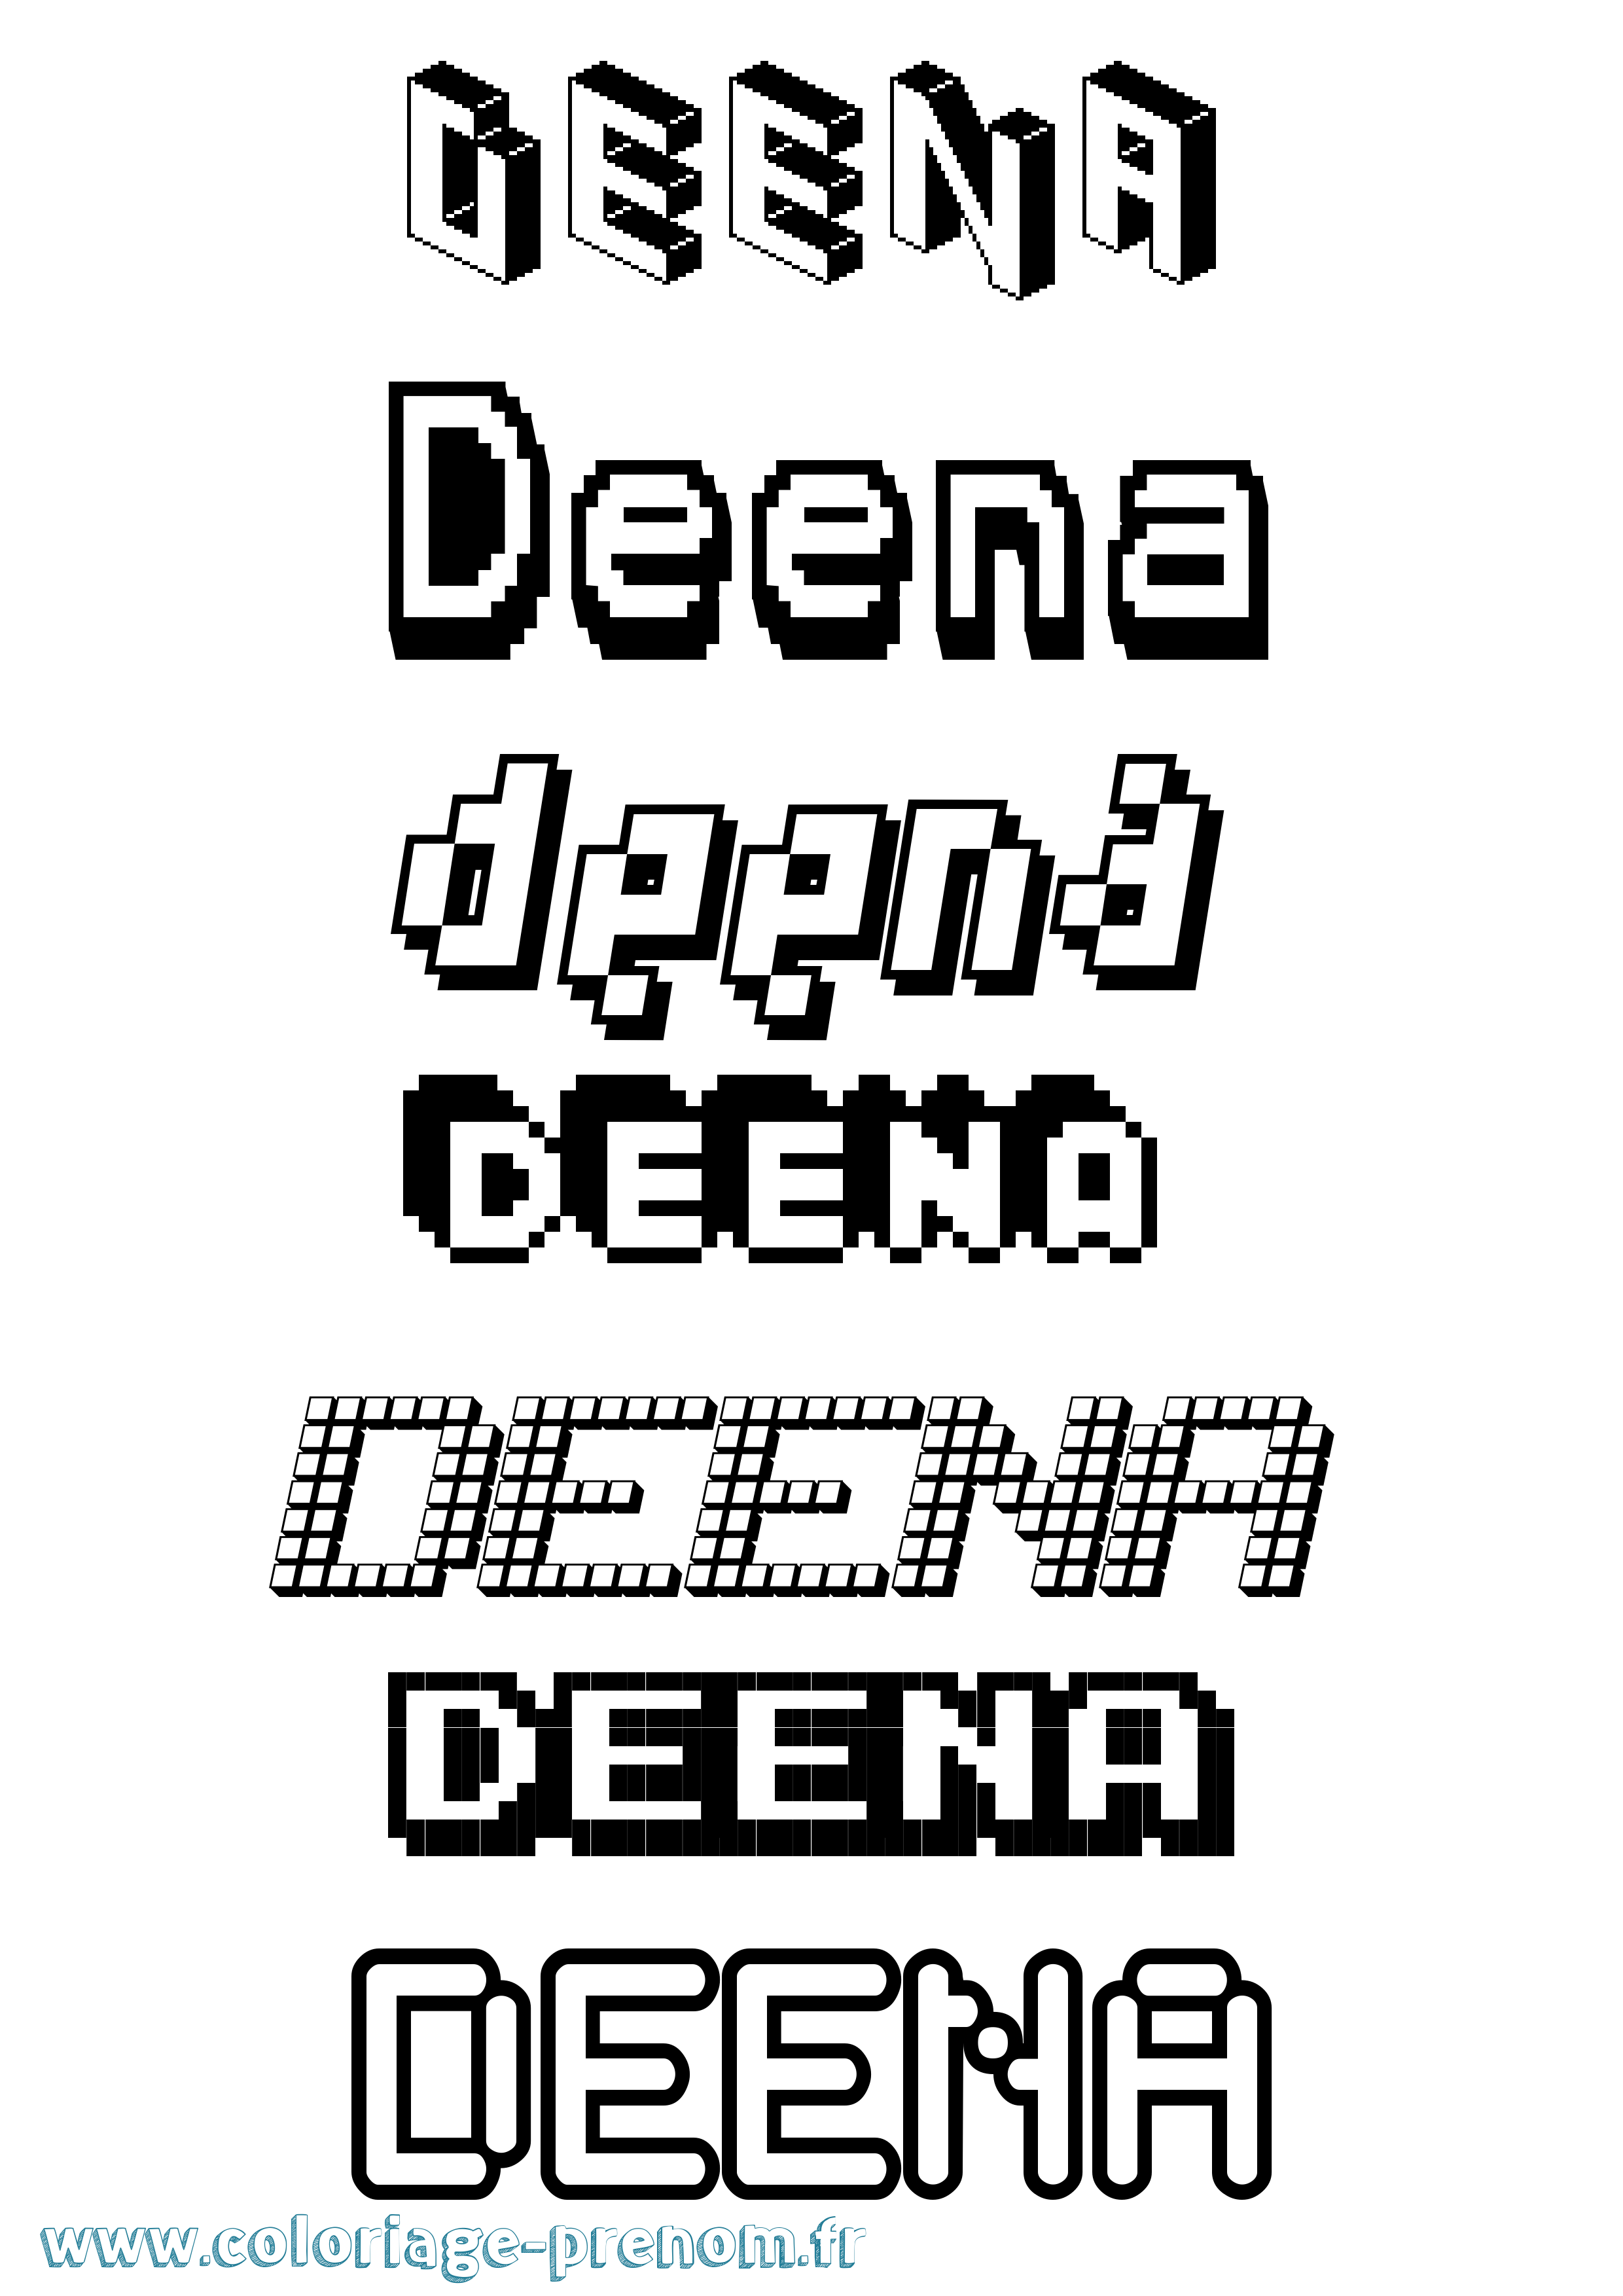 Coloriage prénom Deena Pixel